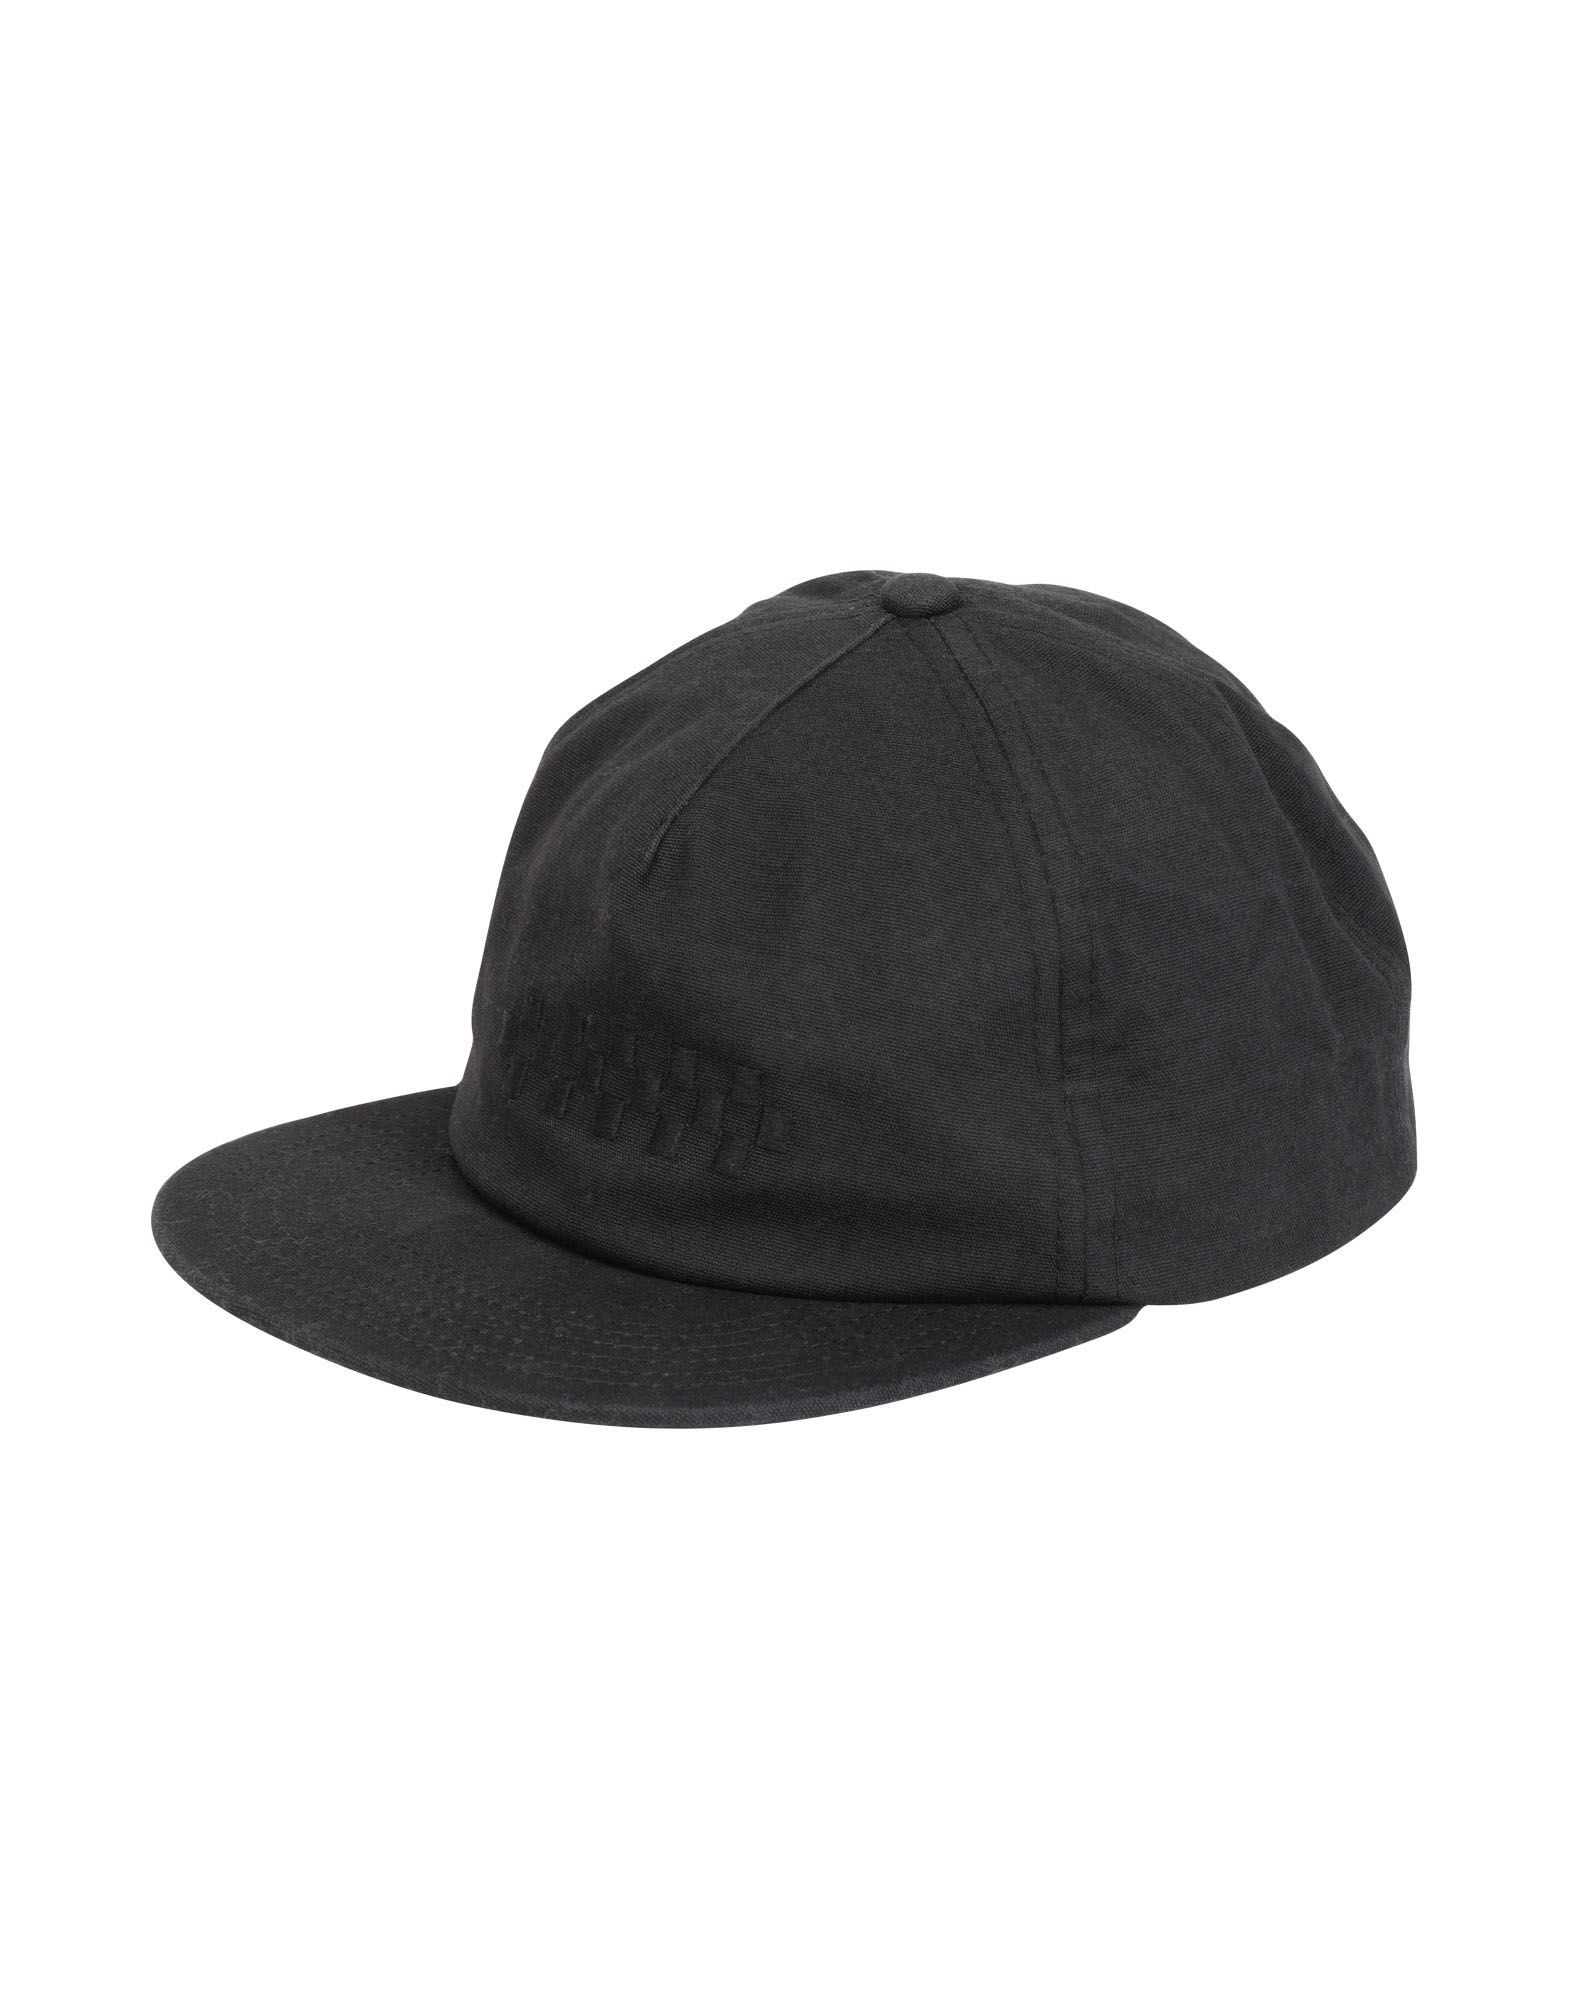 《期間限定セール開催中!》VANS レディース 帽子 ブラック one size コットン 100% WM OVERTIME HAT BLEACHED APR